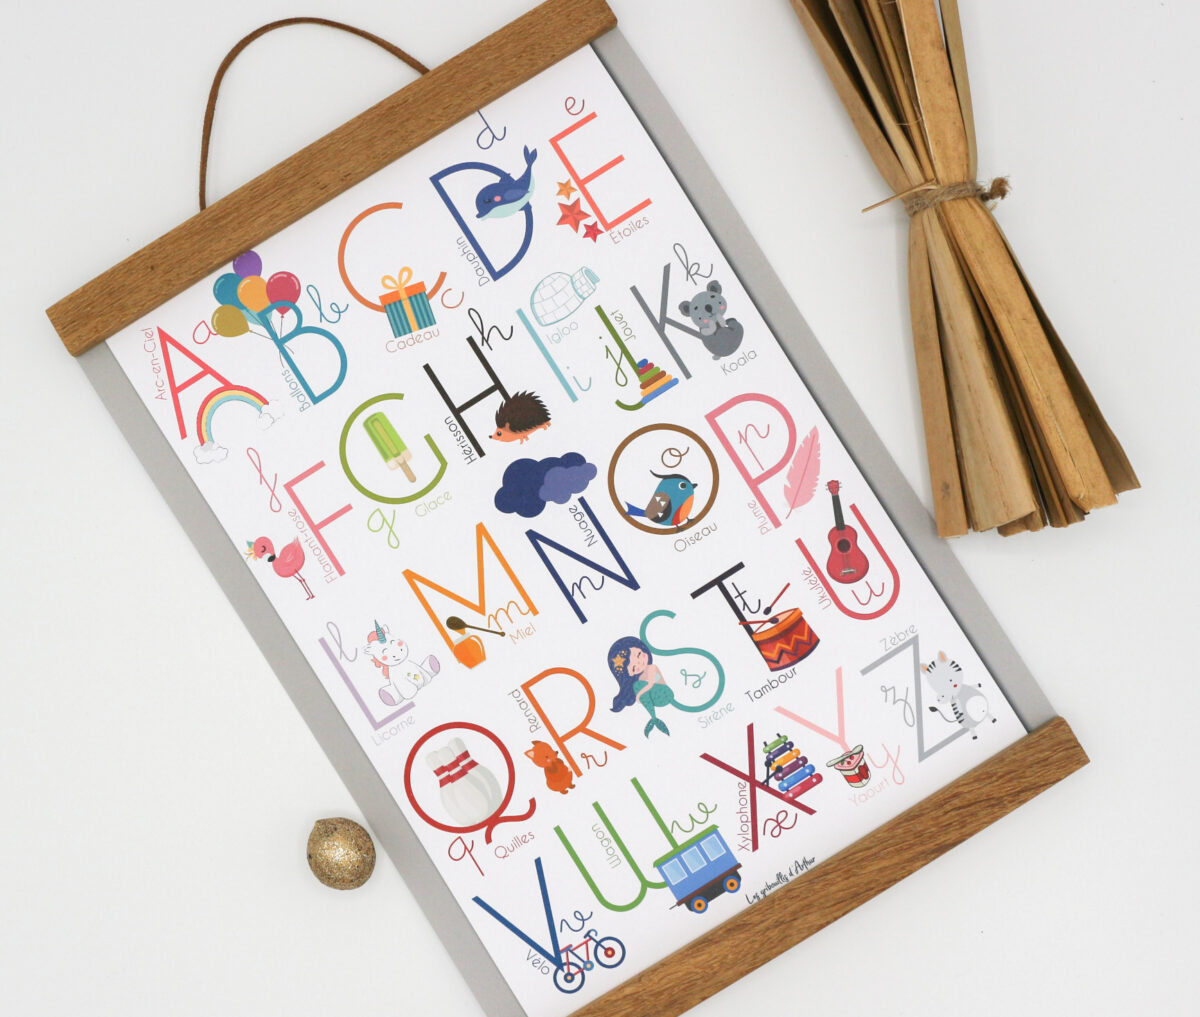 Apprendre en s'amusant ! L'affiche abécédaire est parfaite pour les jeunes enfants qui découvrent les lettres de l’alphabet.